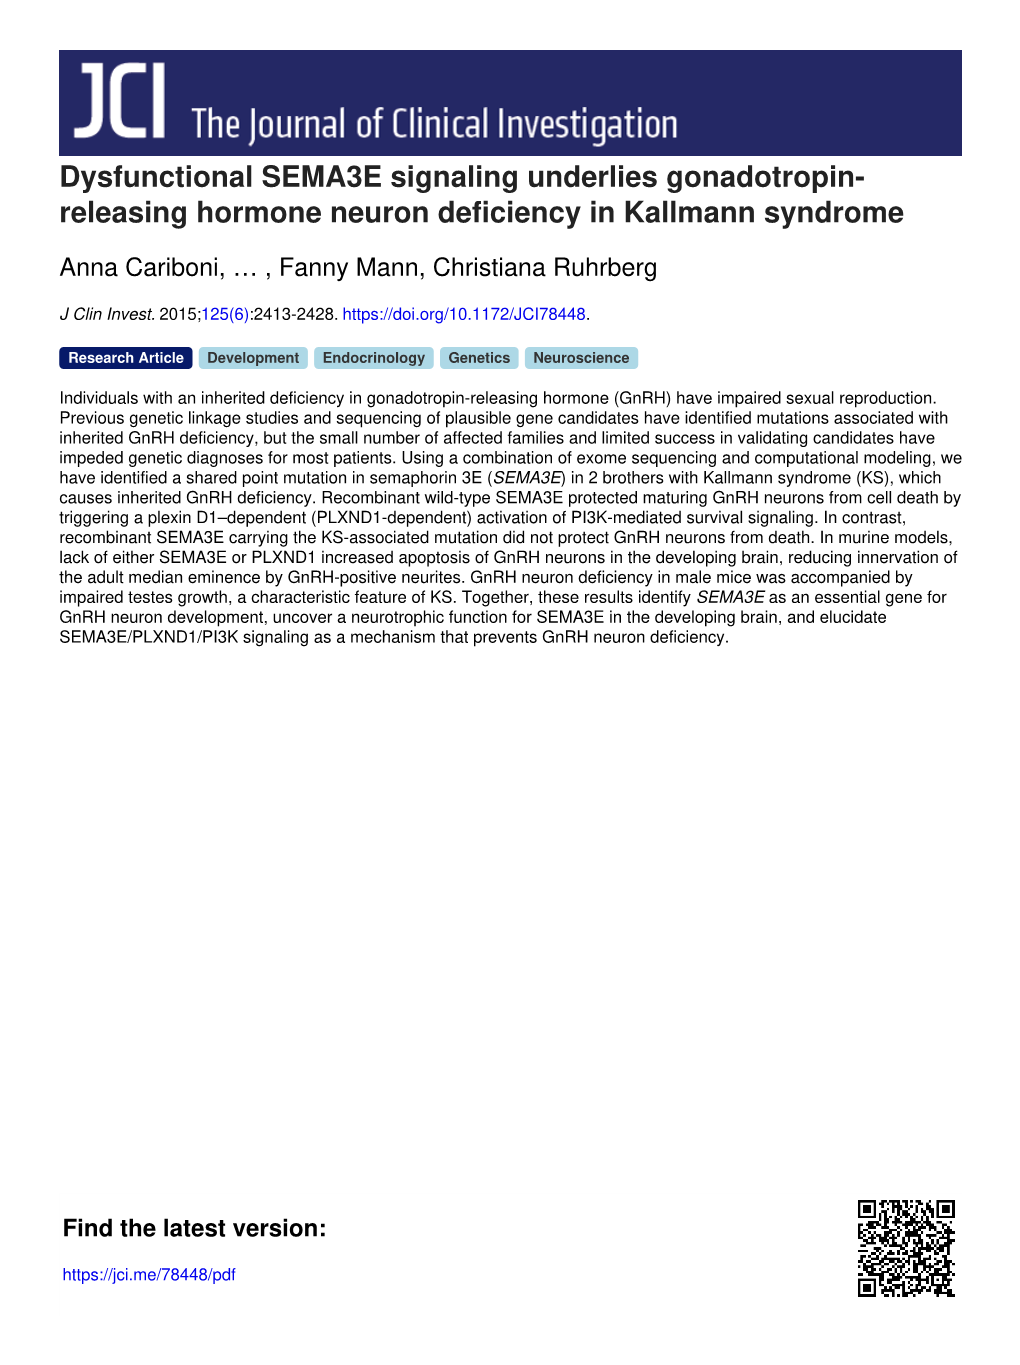 Dysfunctional SEMA3E Signaling Underlies Gonadotropin- Releasing Hormone Neuron Deficiency in Kallmann Syndrome